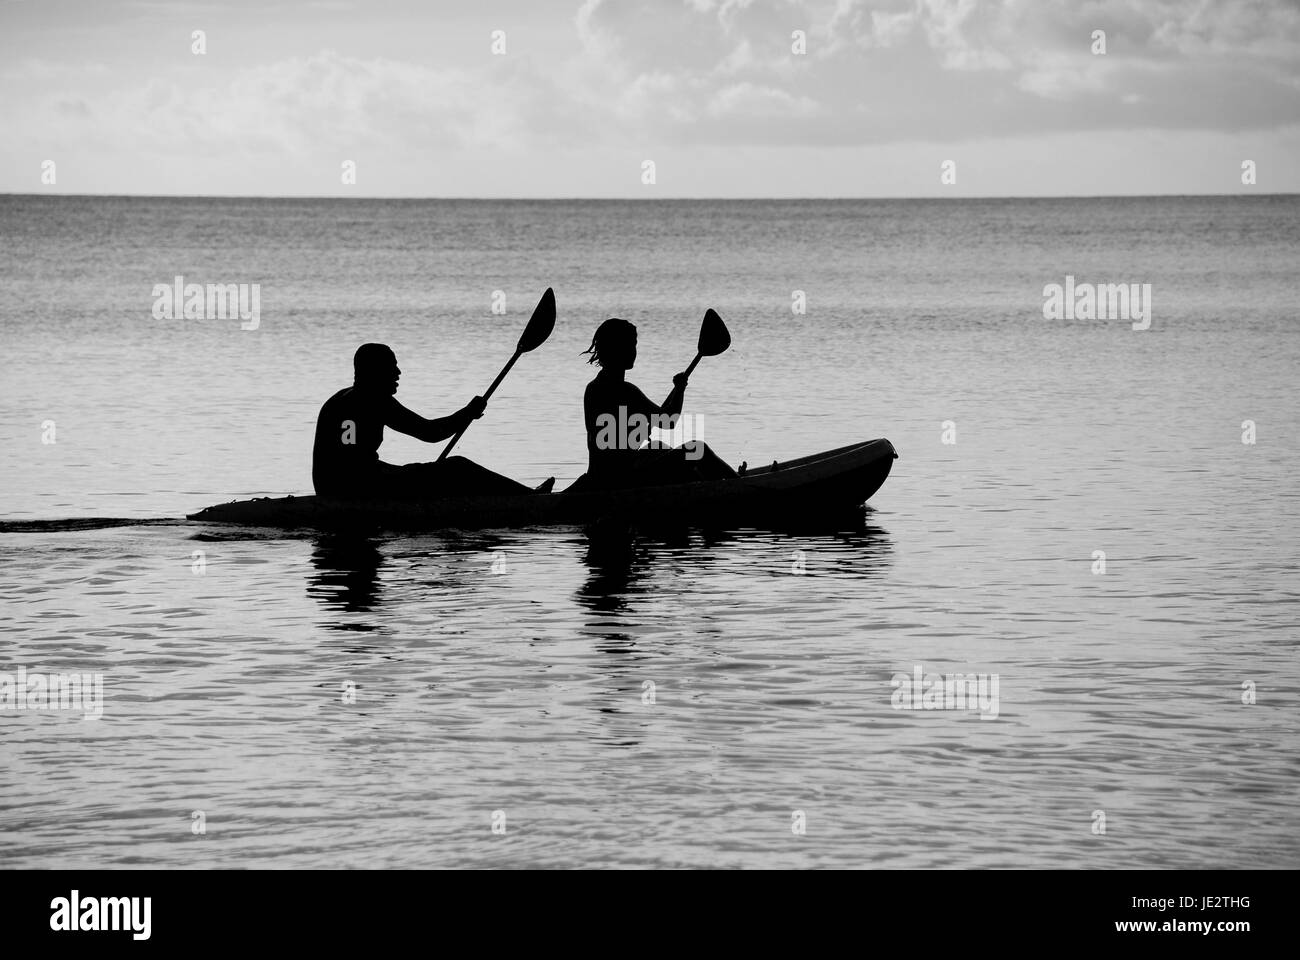 Mann und Frau auf dem Meer in einem Kajak - Silhouette monochrome Verarbeitung Stockfoto